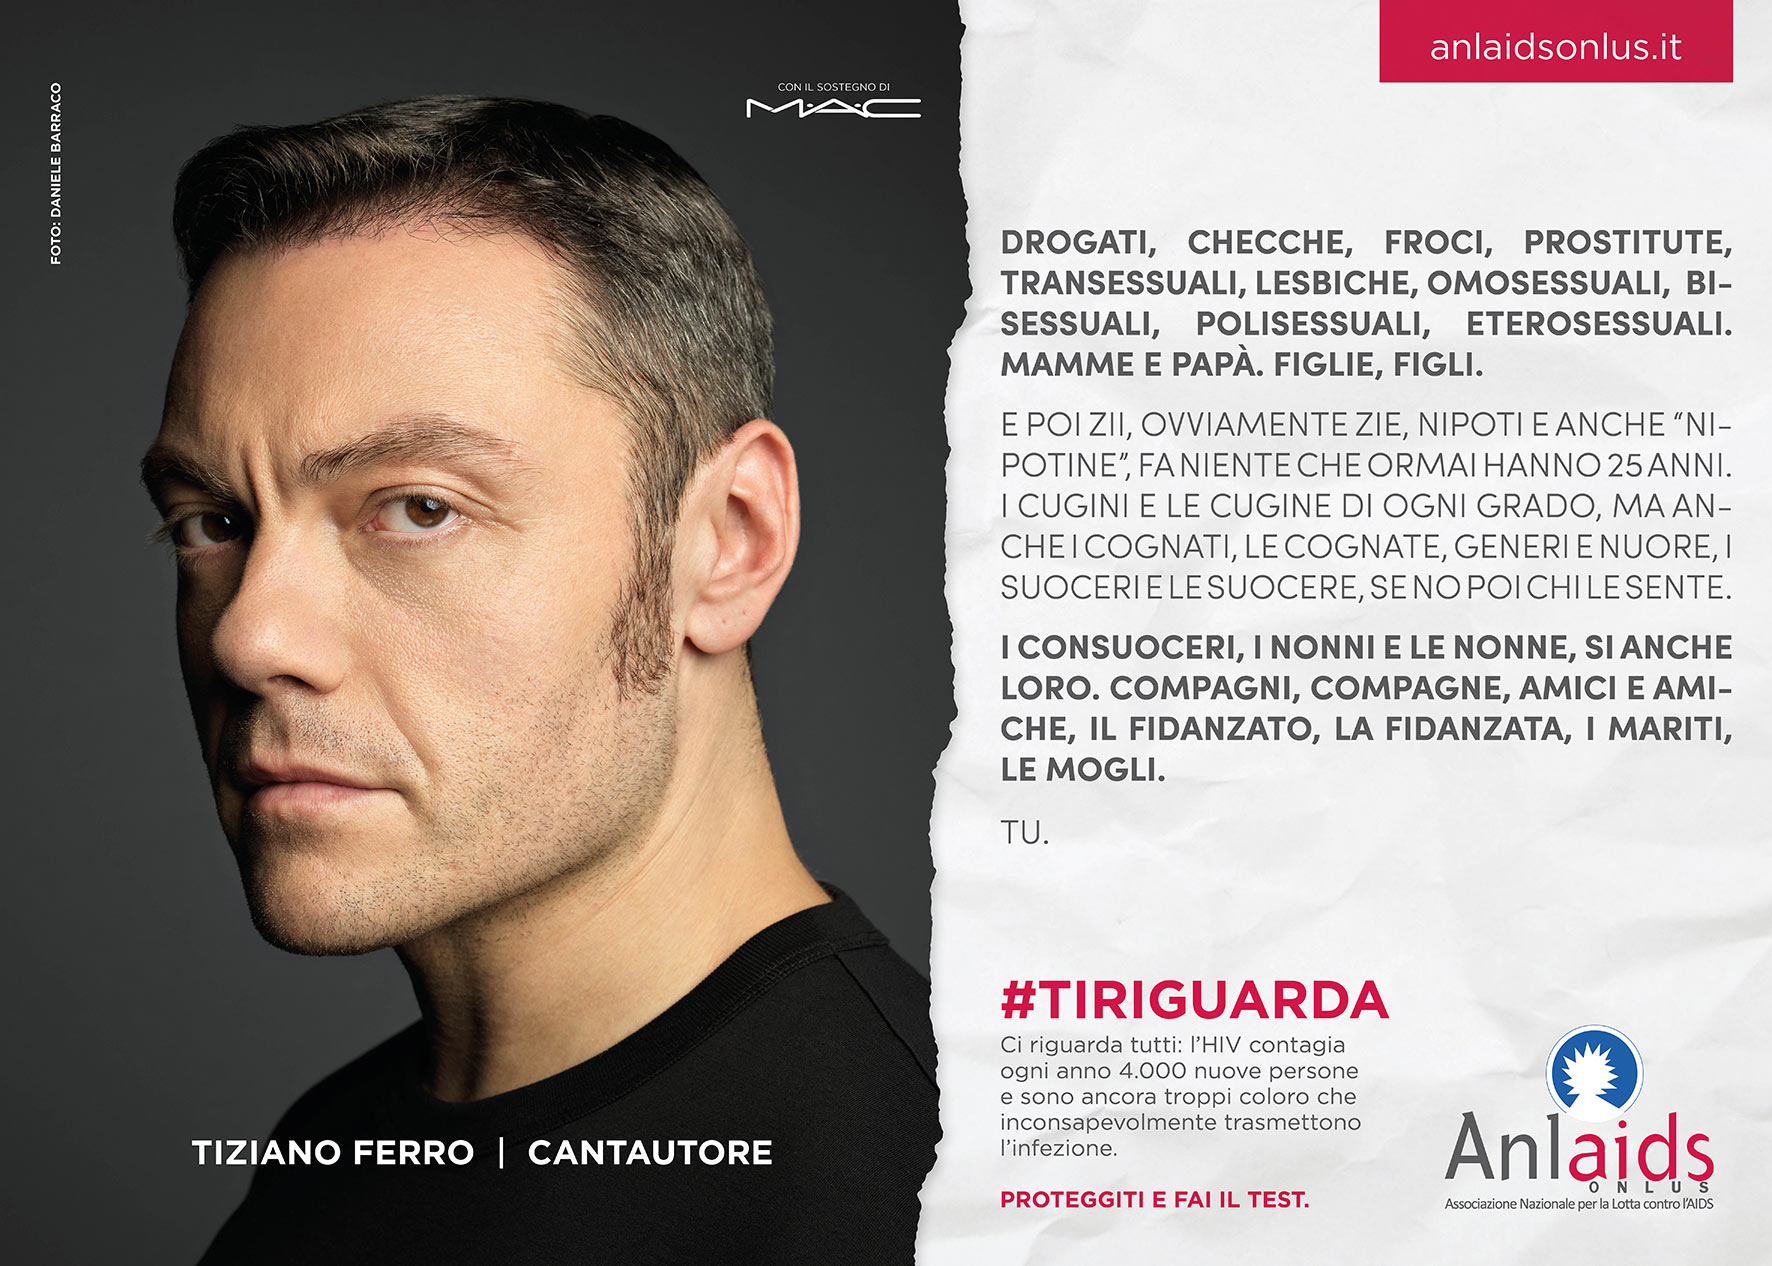 ANLAIDS campaign - Tiziano Ferro